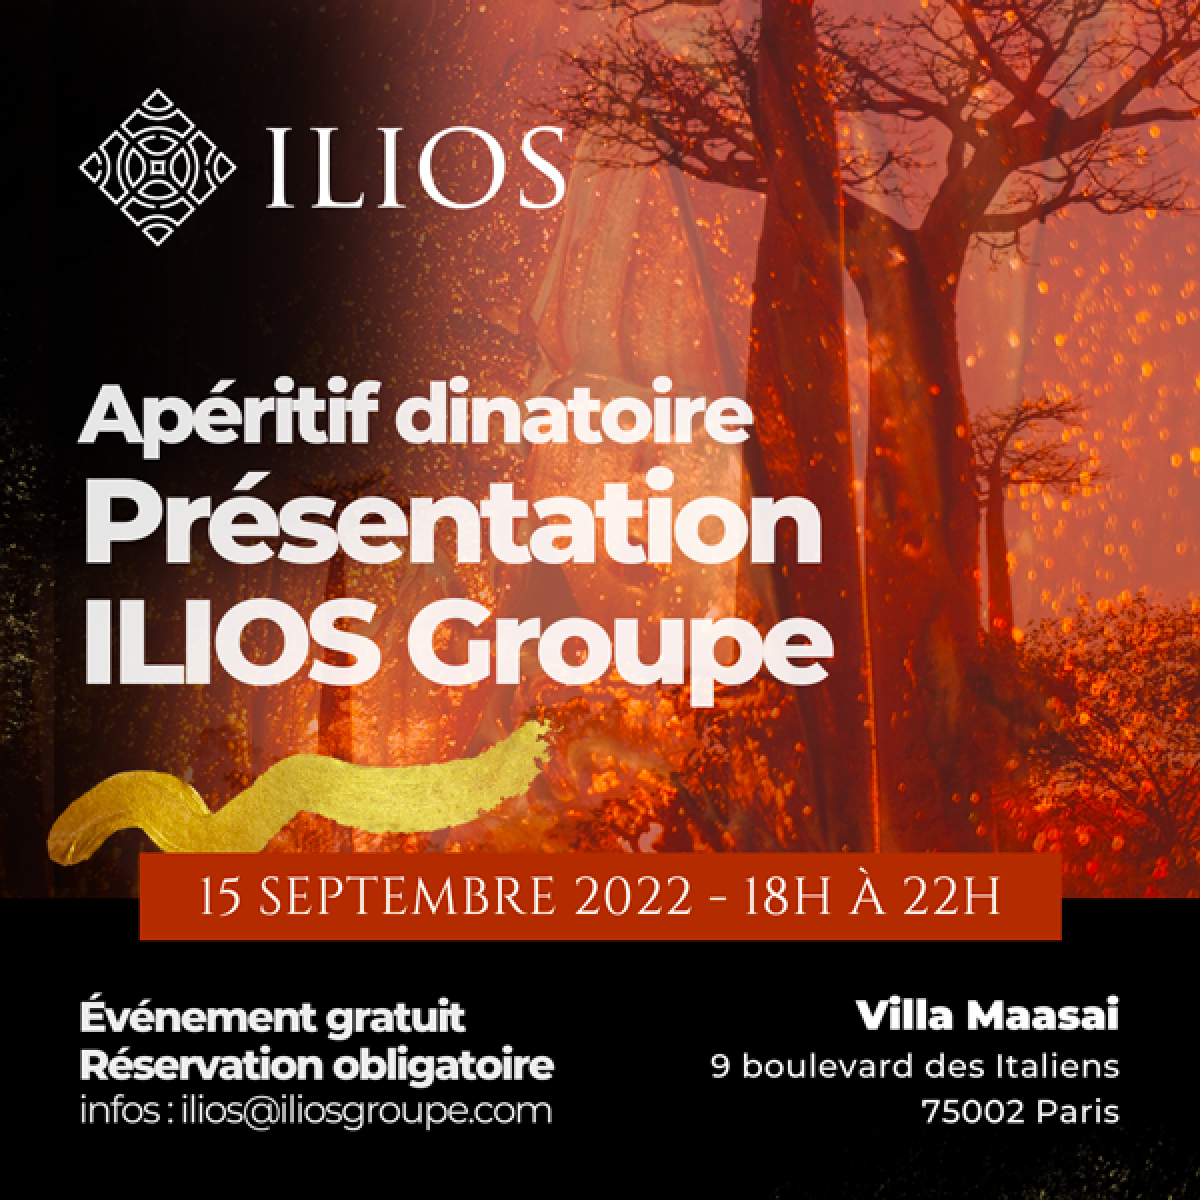 Présentation d'ILIOS Groupe par Pathé Dialo à la Villa Maasai (Paris)